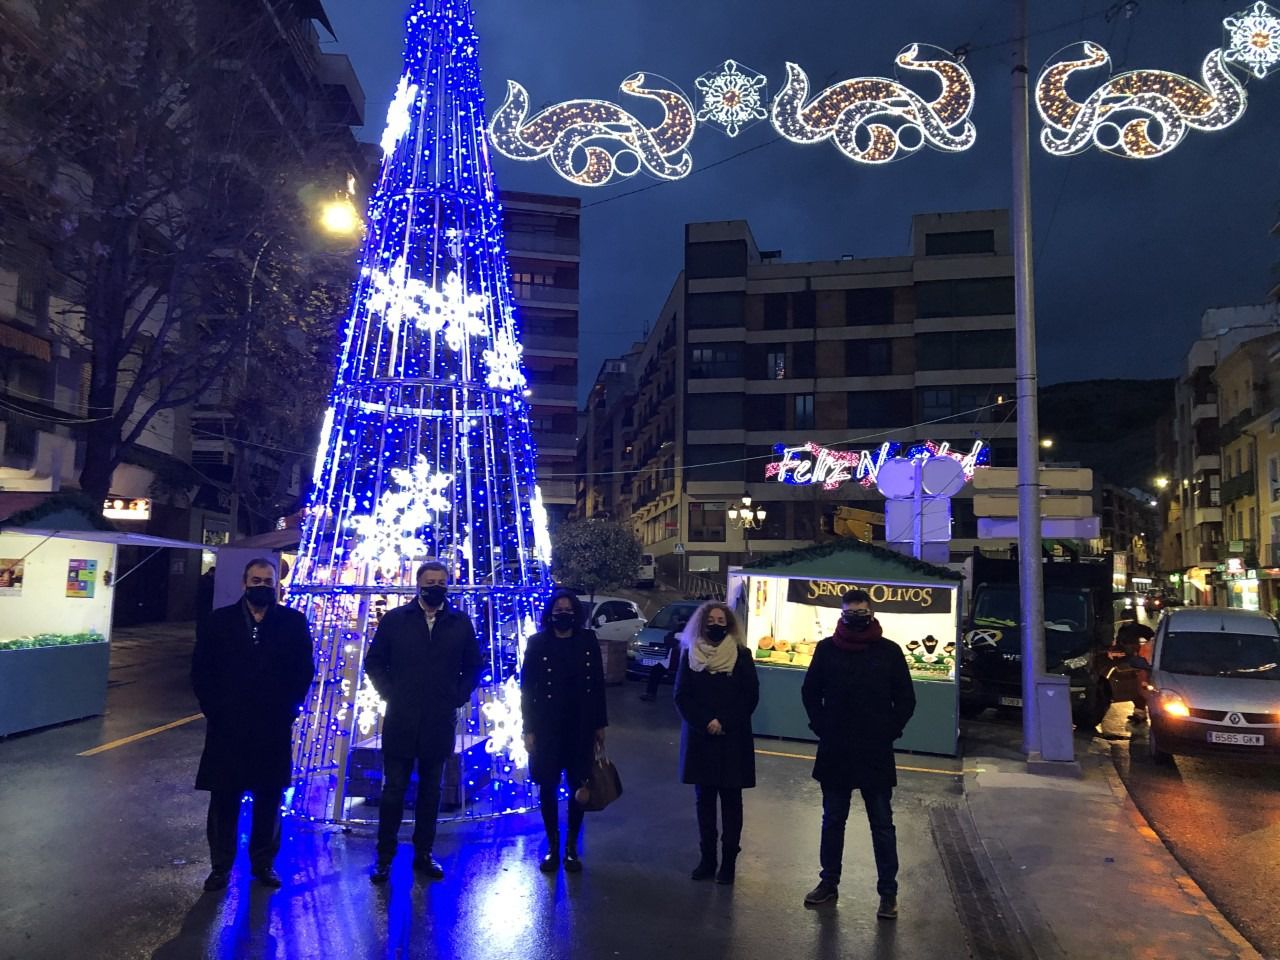 La de la Navidad a Cuenca con el encendido de la iluminación navideña | Cuenca News